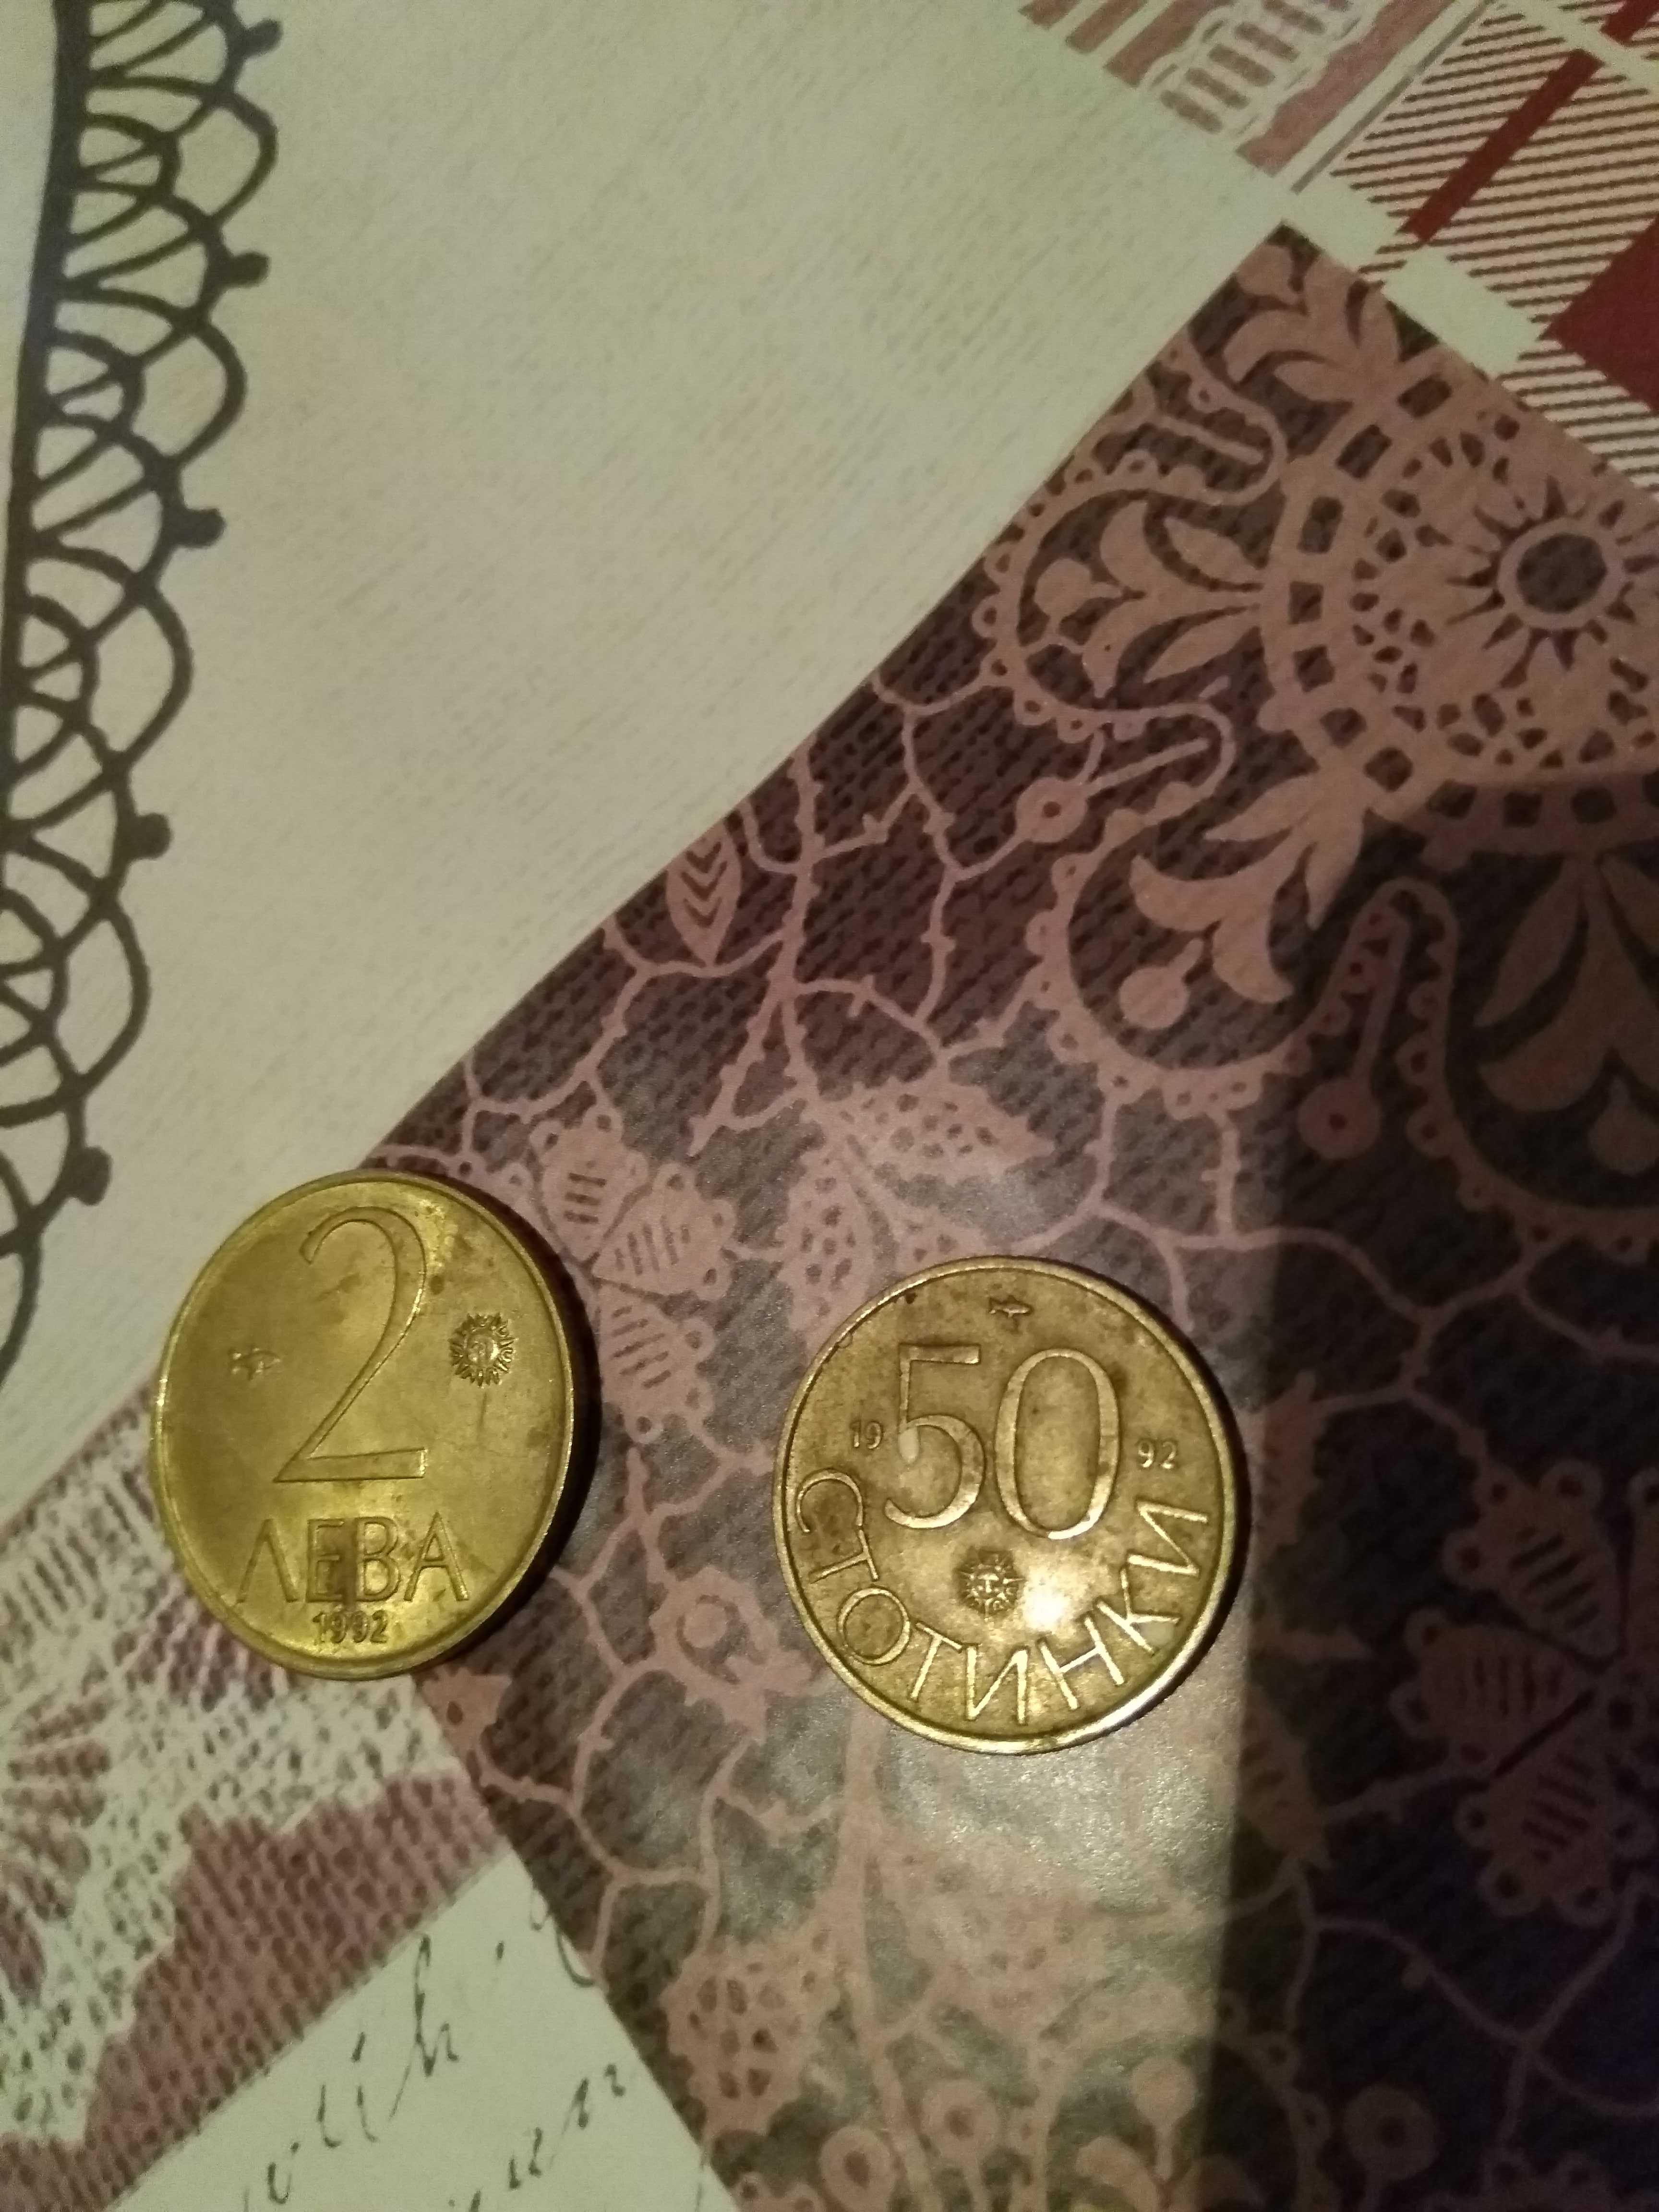 Български монети от 2 лв и 0.50 стотинки от 1992 г